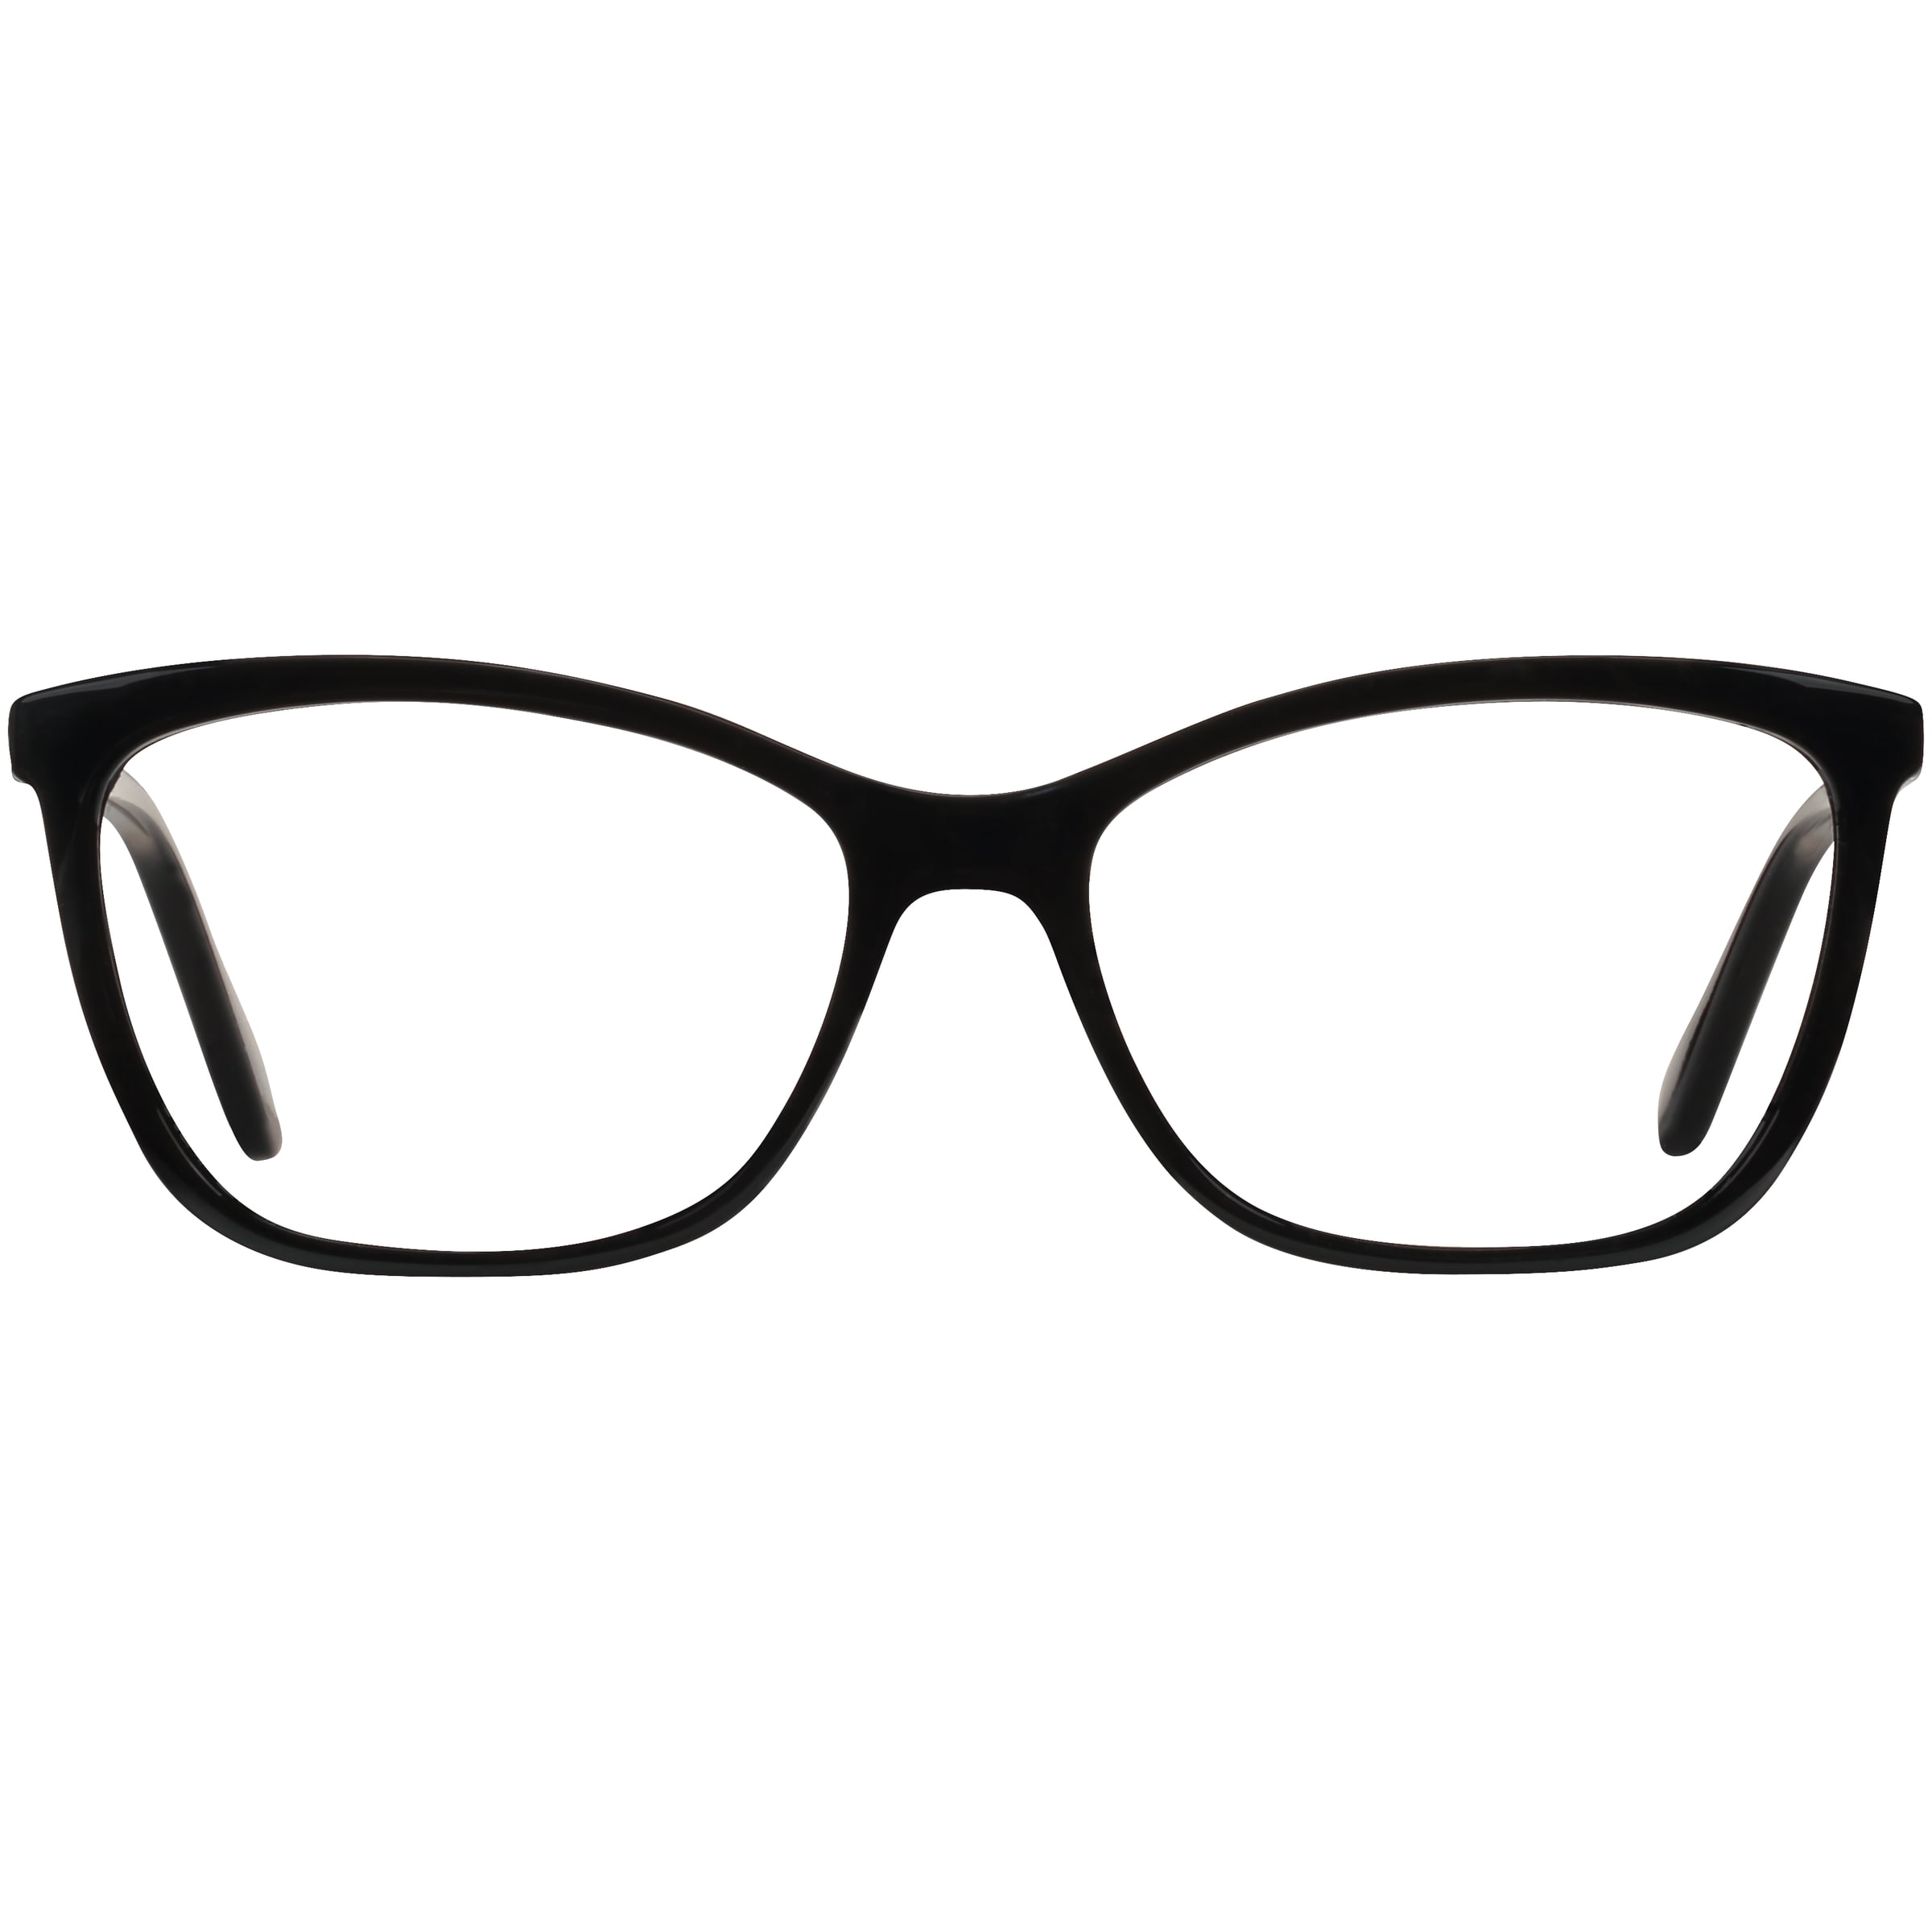 EV1 from Ellen DeGeneres tillie black eyeglass frames with case ...